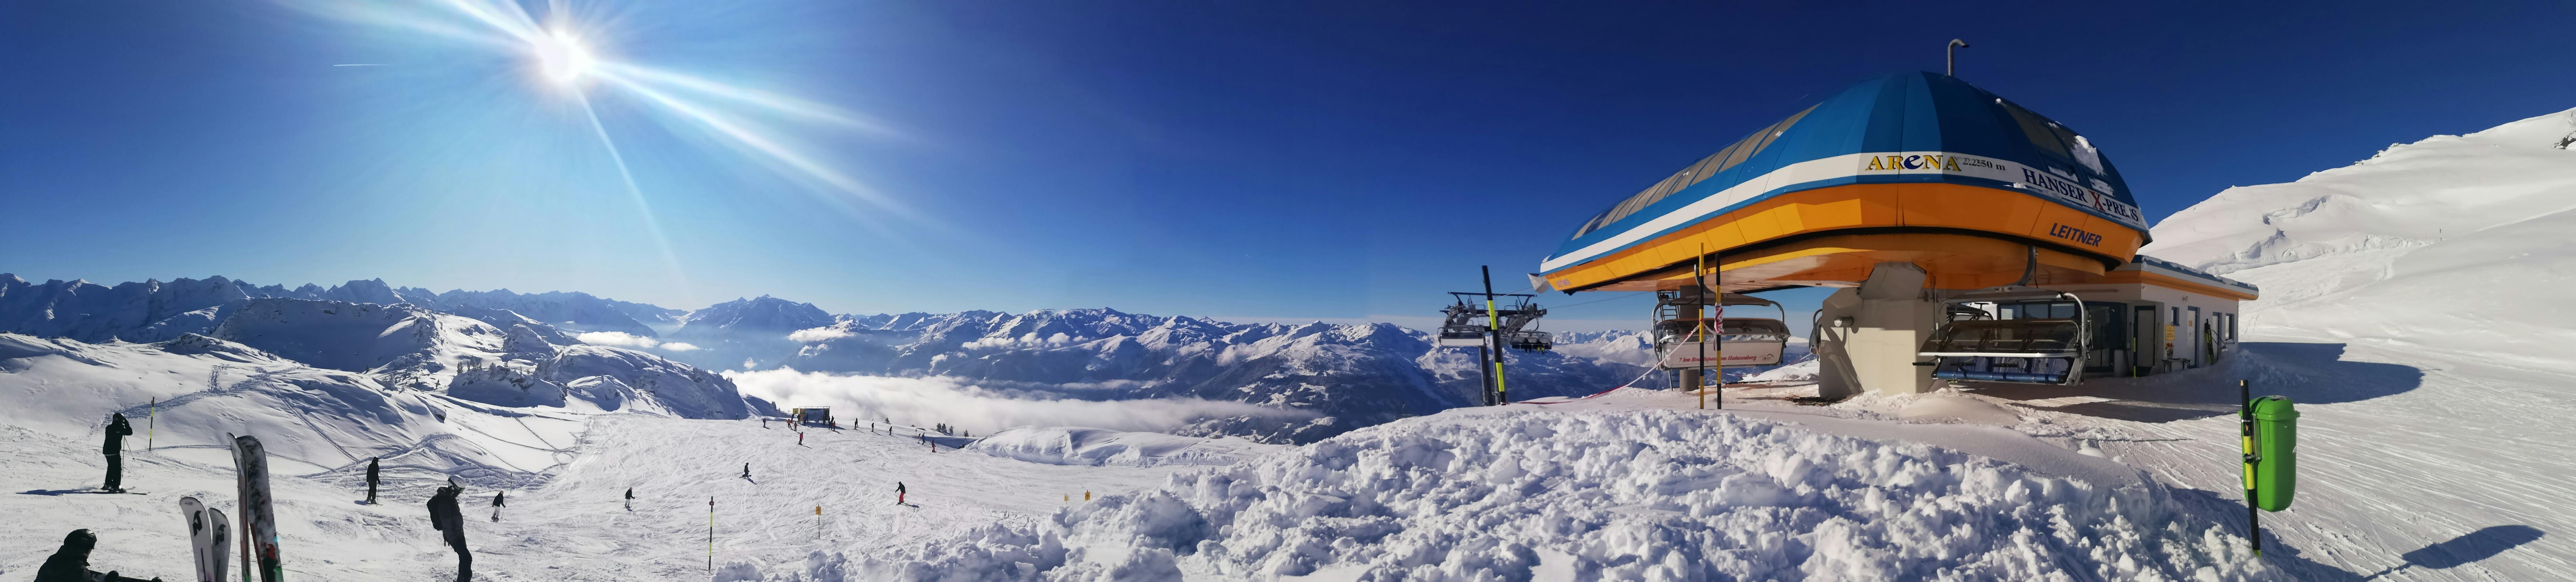 Free stock photo of skiing resort, sunshine, winter